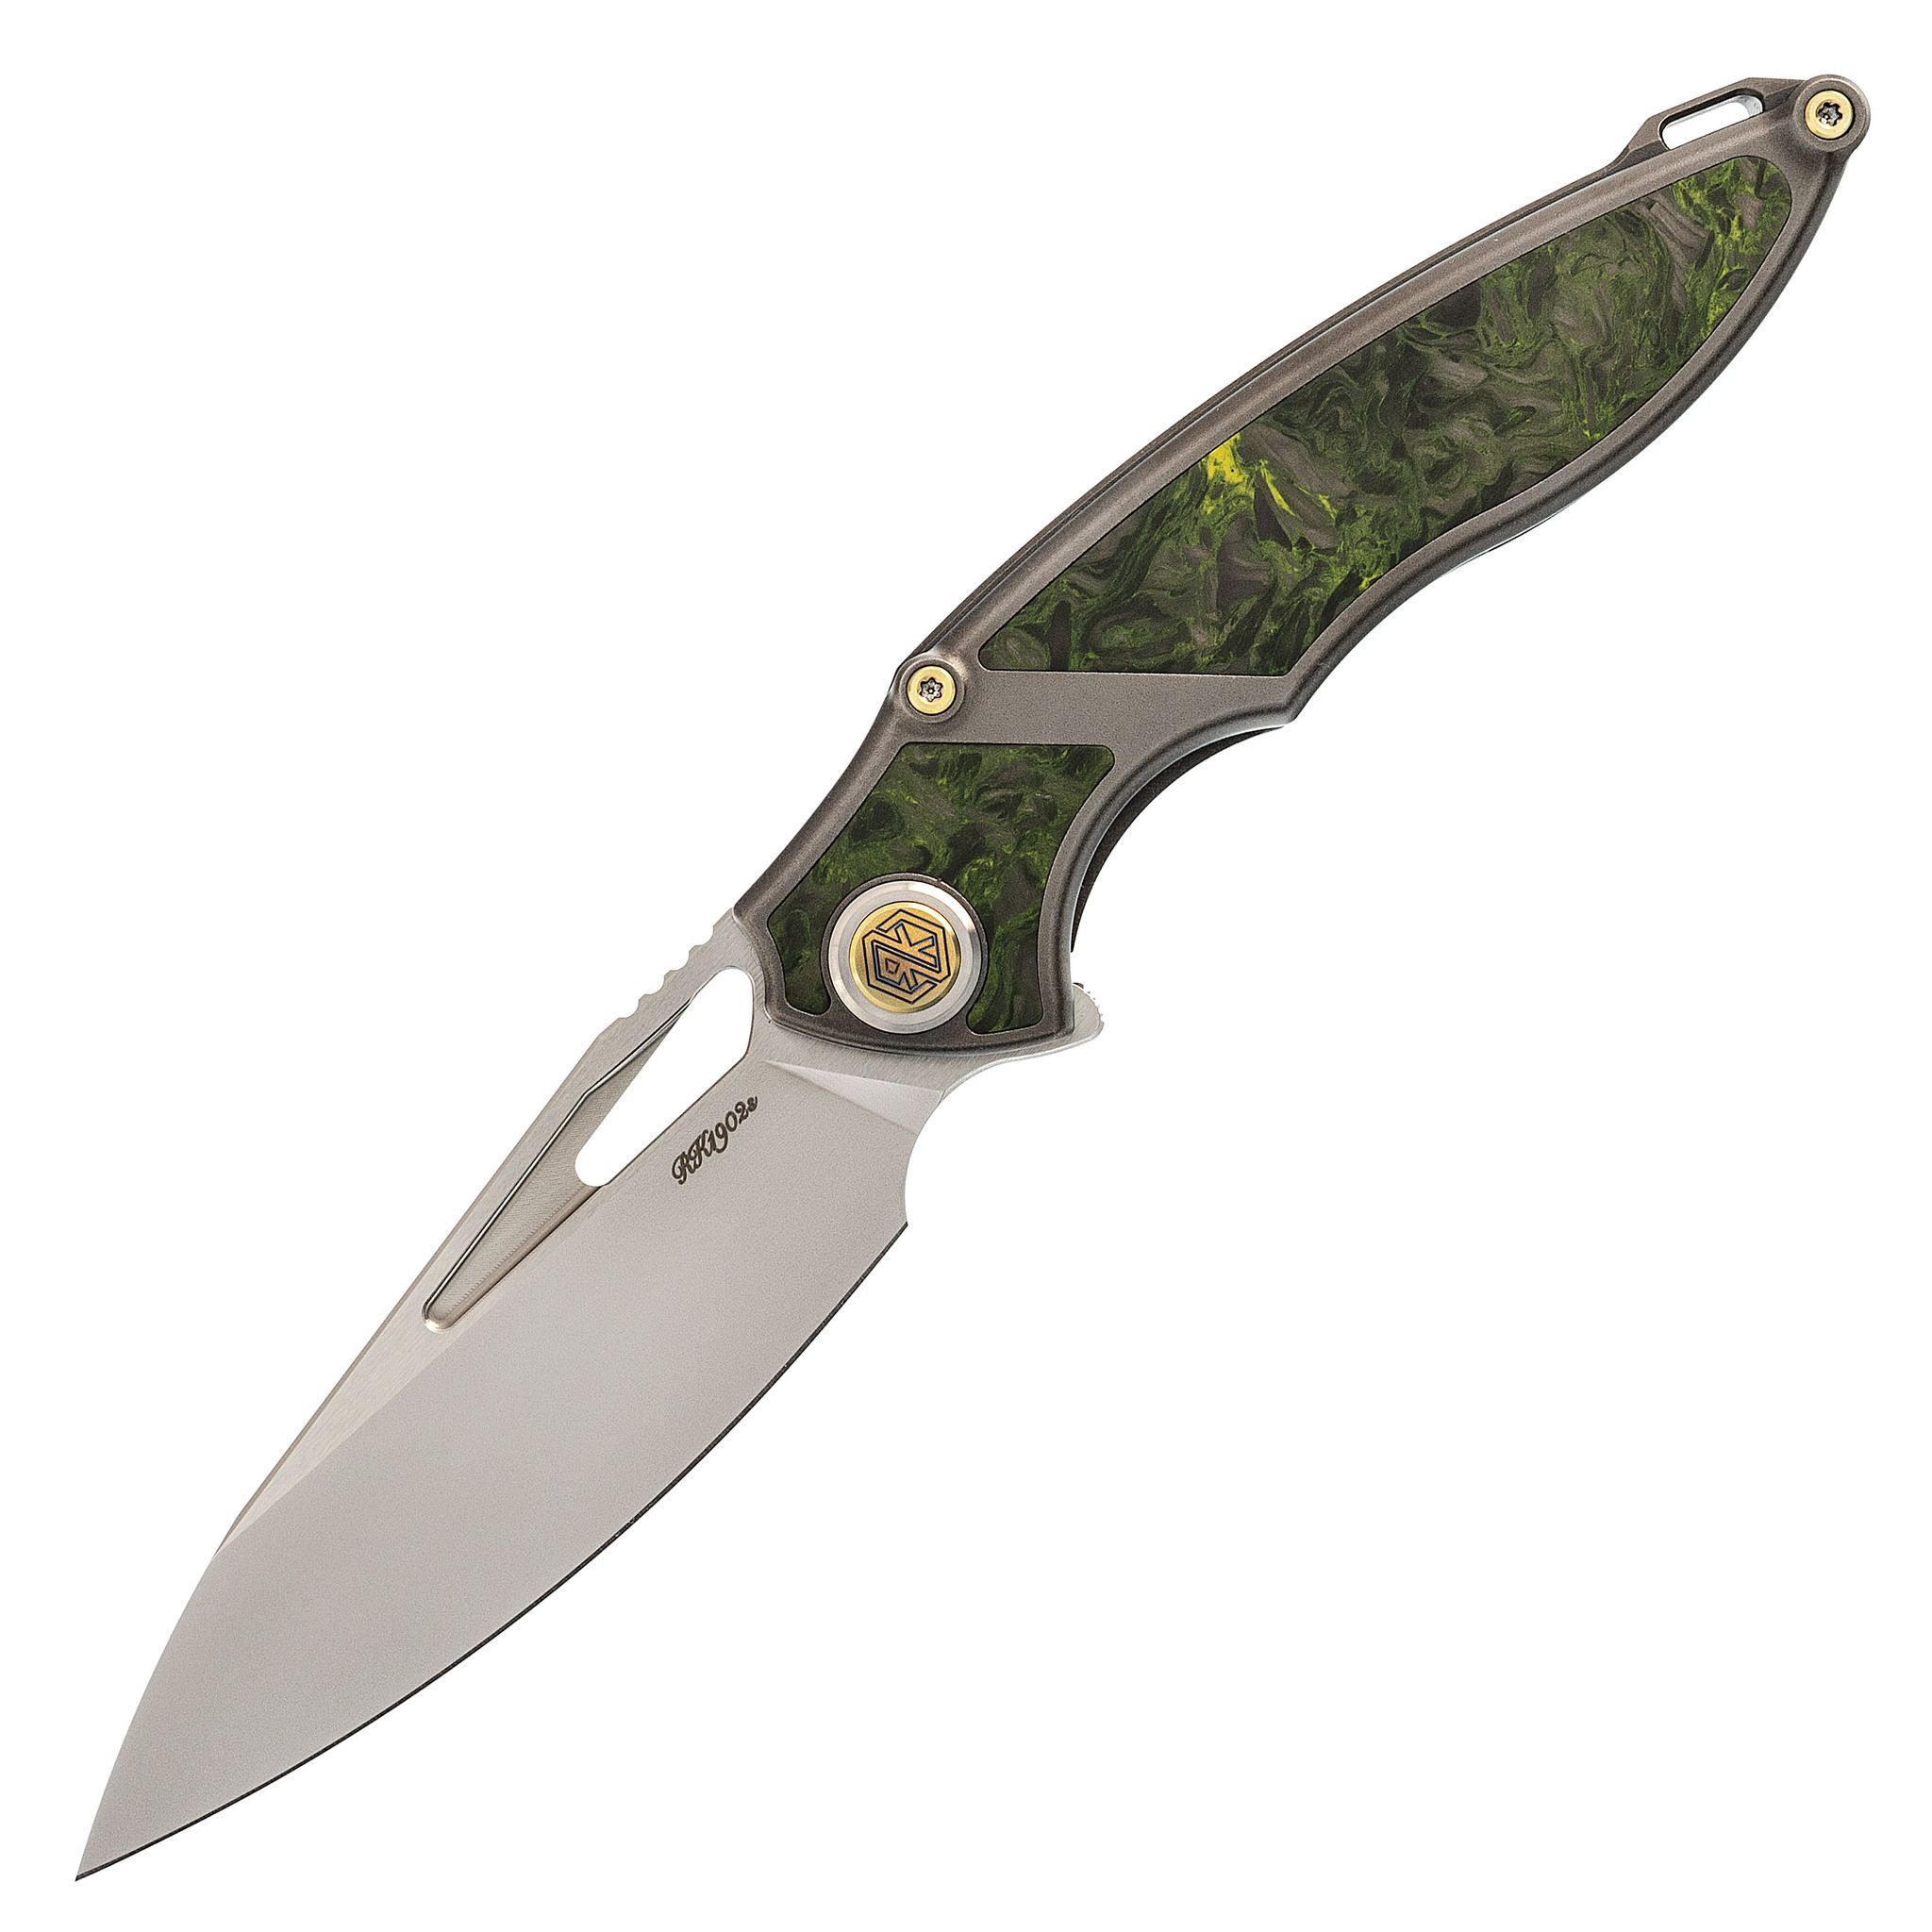 Нож складной RK1902s Rikeknife, сталь M390, рукоять Green Carbon fiber